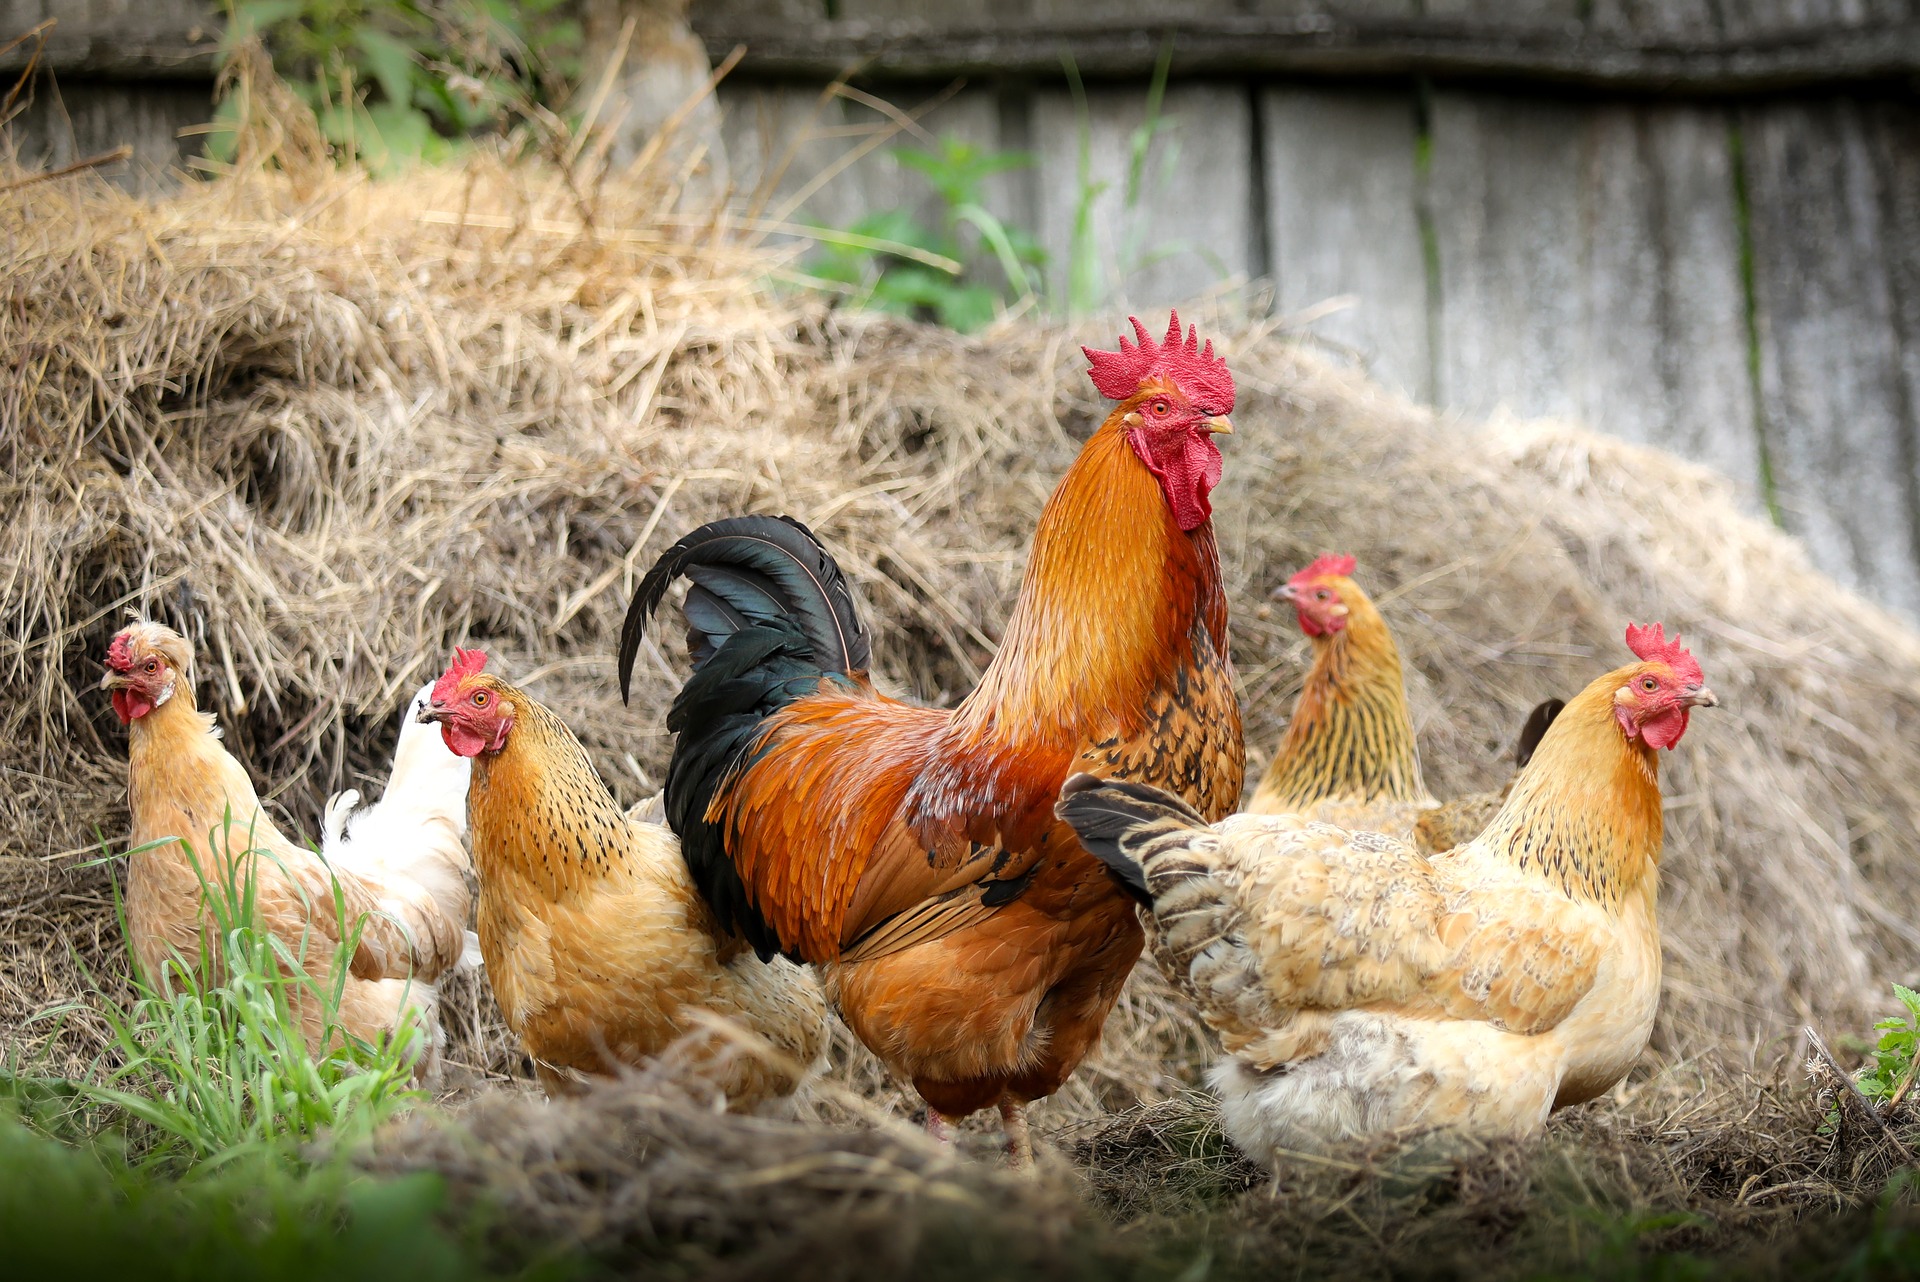 消費者選購蛋品時，常常有許多似是而非的迷思，包括：生鮮雞蛋不清洗比清洗衛生，放牧比籠飼蛋雞生產的蛋品質好，直接向農場買蛋比在市場上買新鮮，雞飼料成分會影響雞蛋的品質。